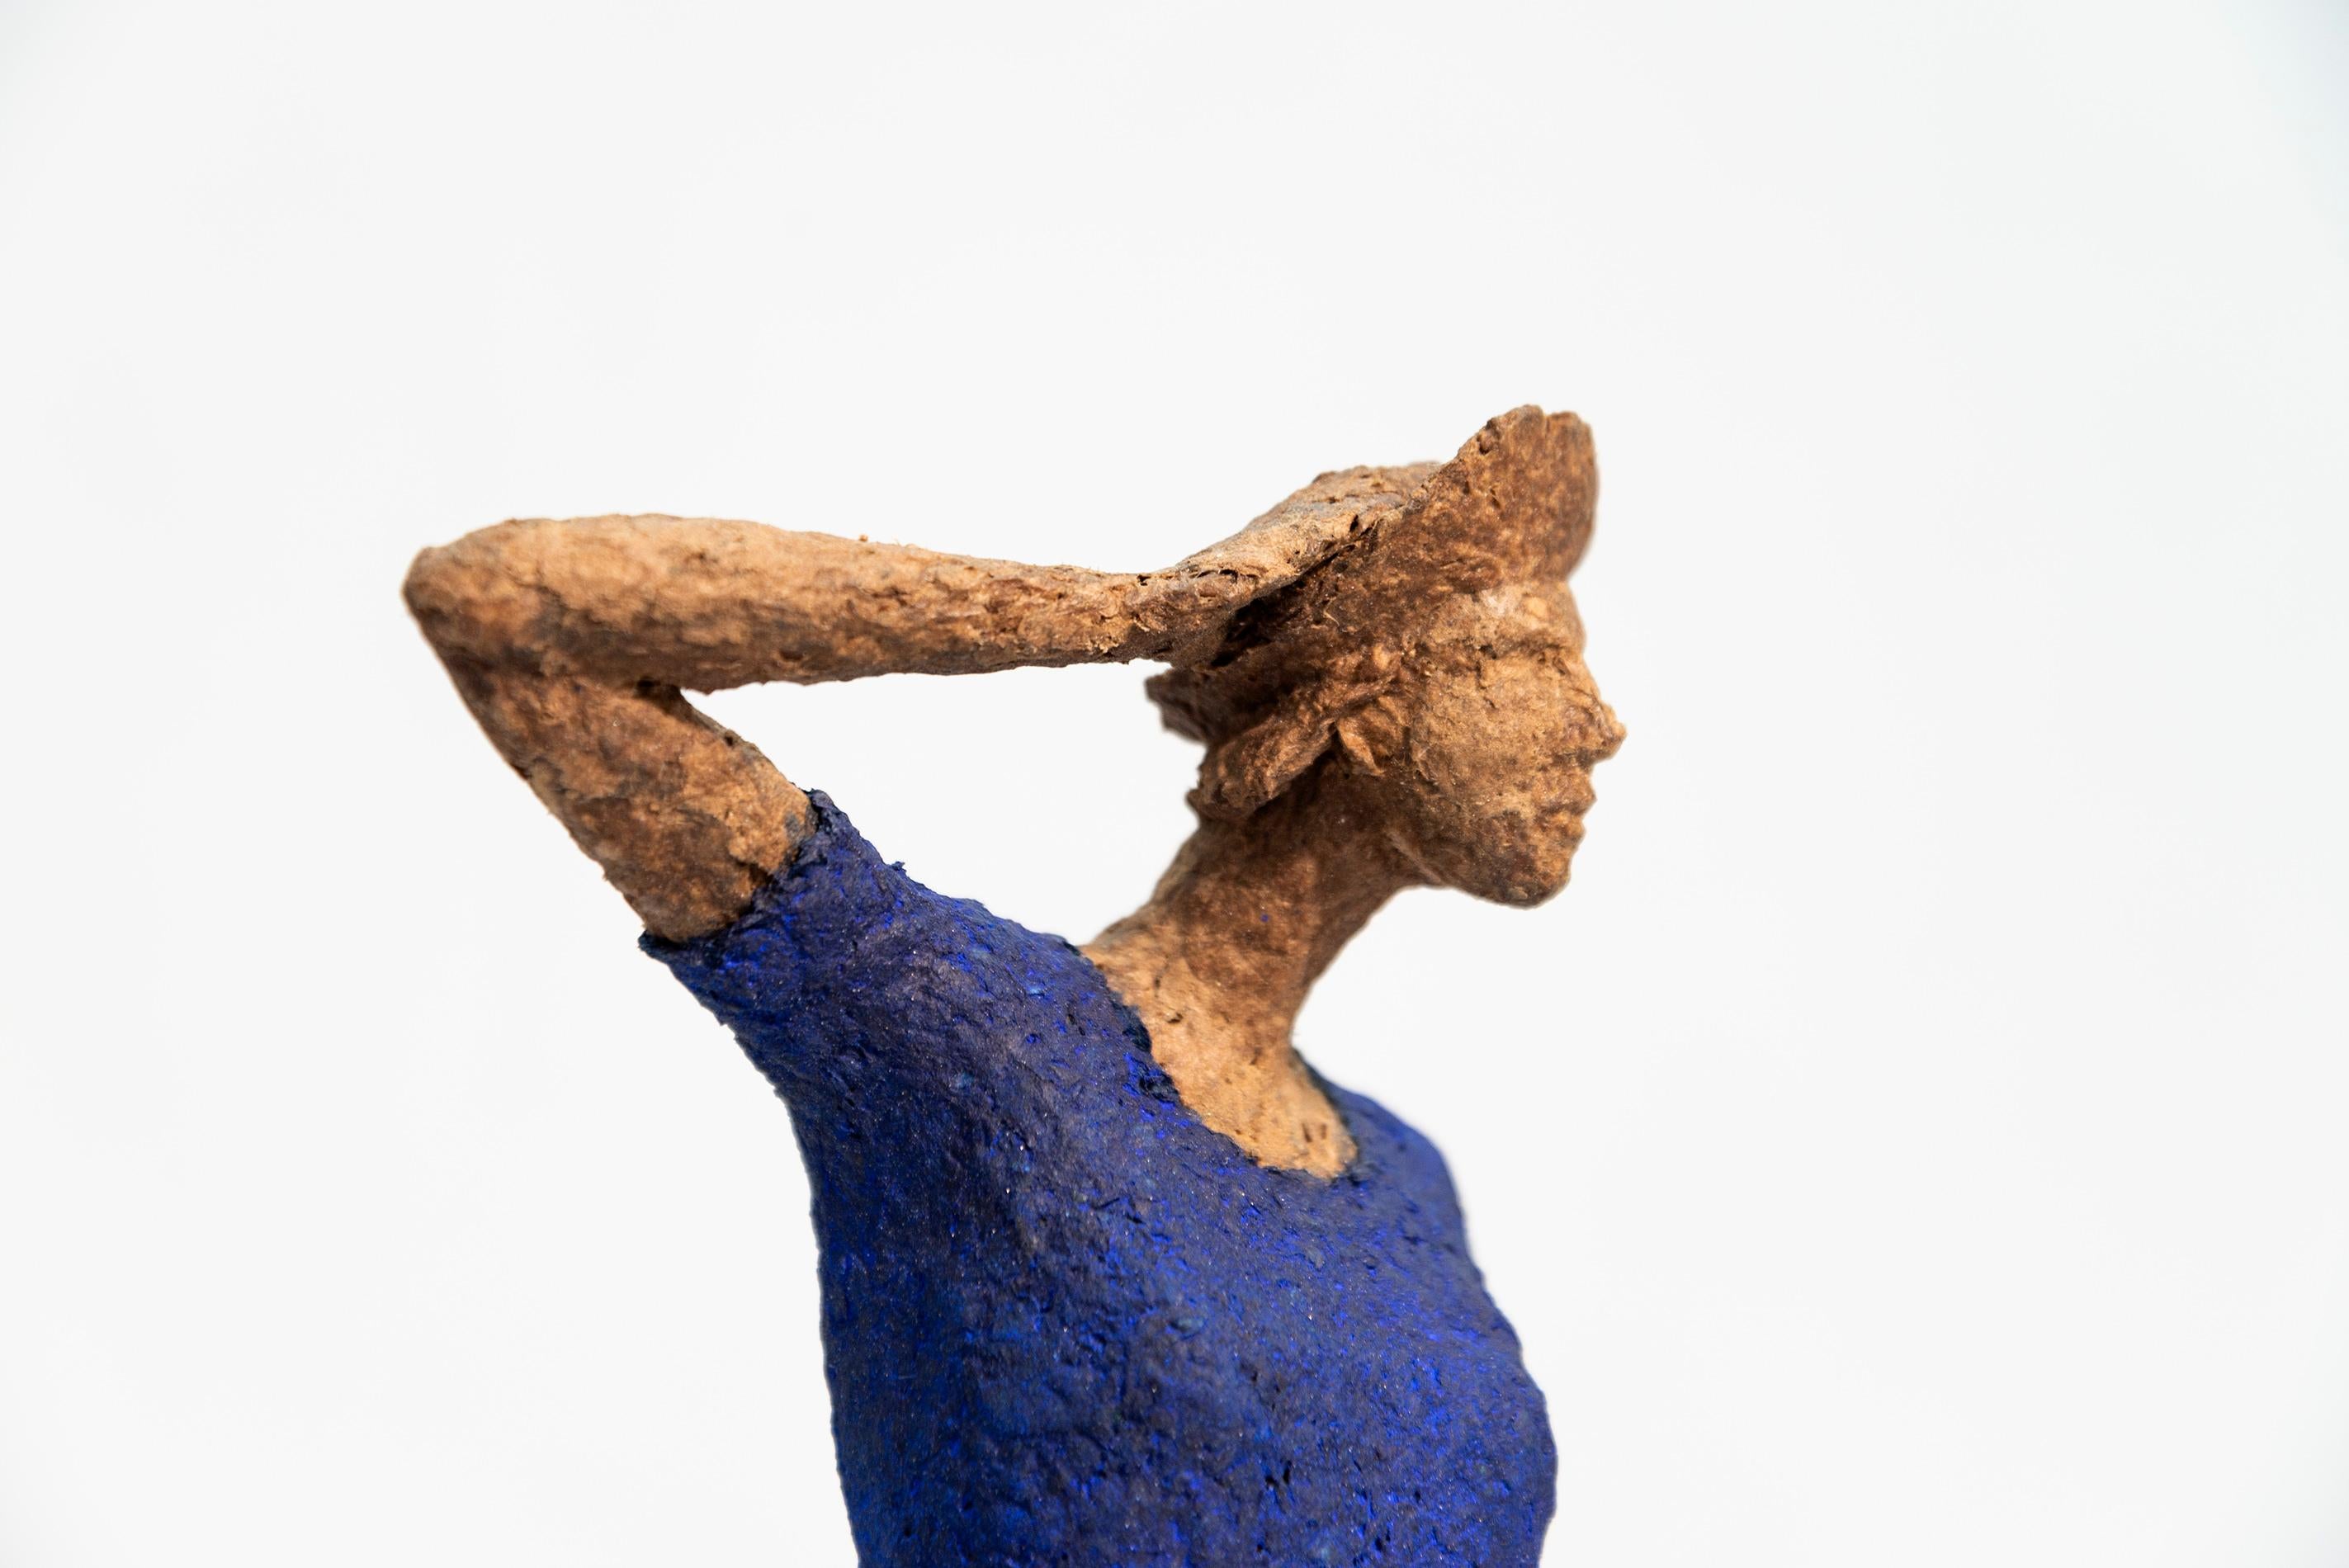 Les fascinantes figures sculptées de Paul Duval capturent un moment d'émotion dans le temps. Dans une série de pièces de table, l'artiste québécois utilise du papier mâché, du fil de fer et de l'acier pour créer des personnages uniques qui